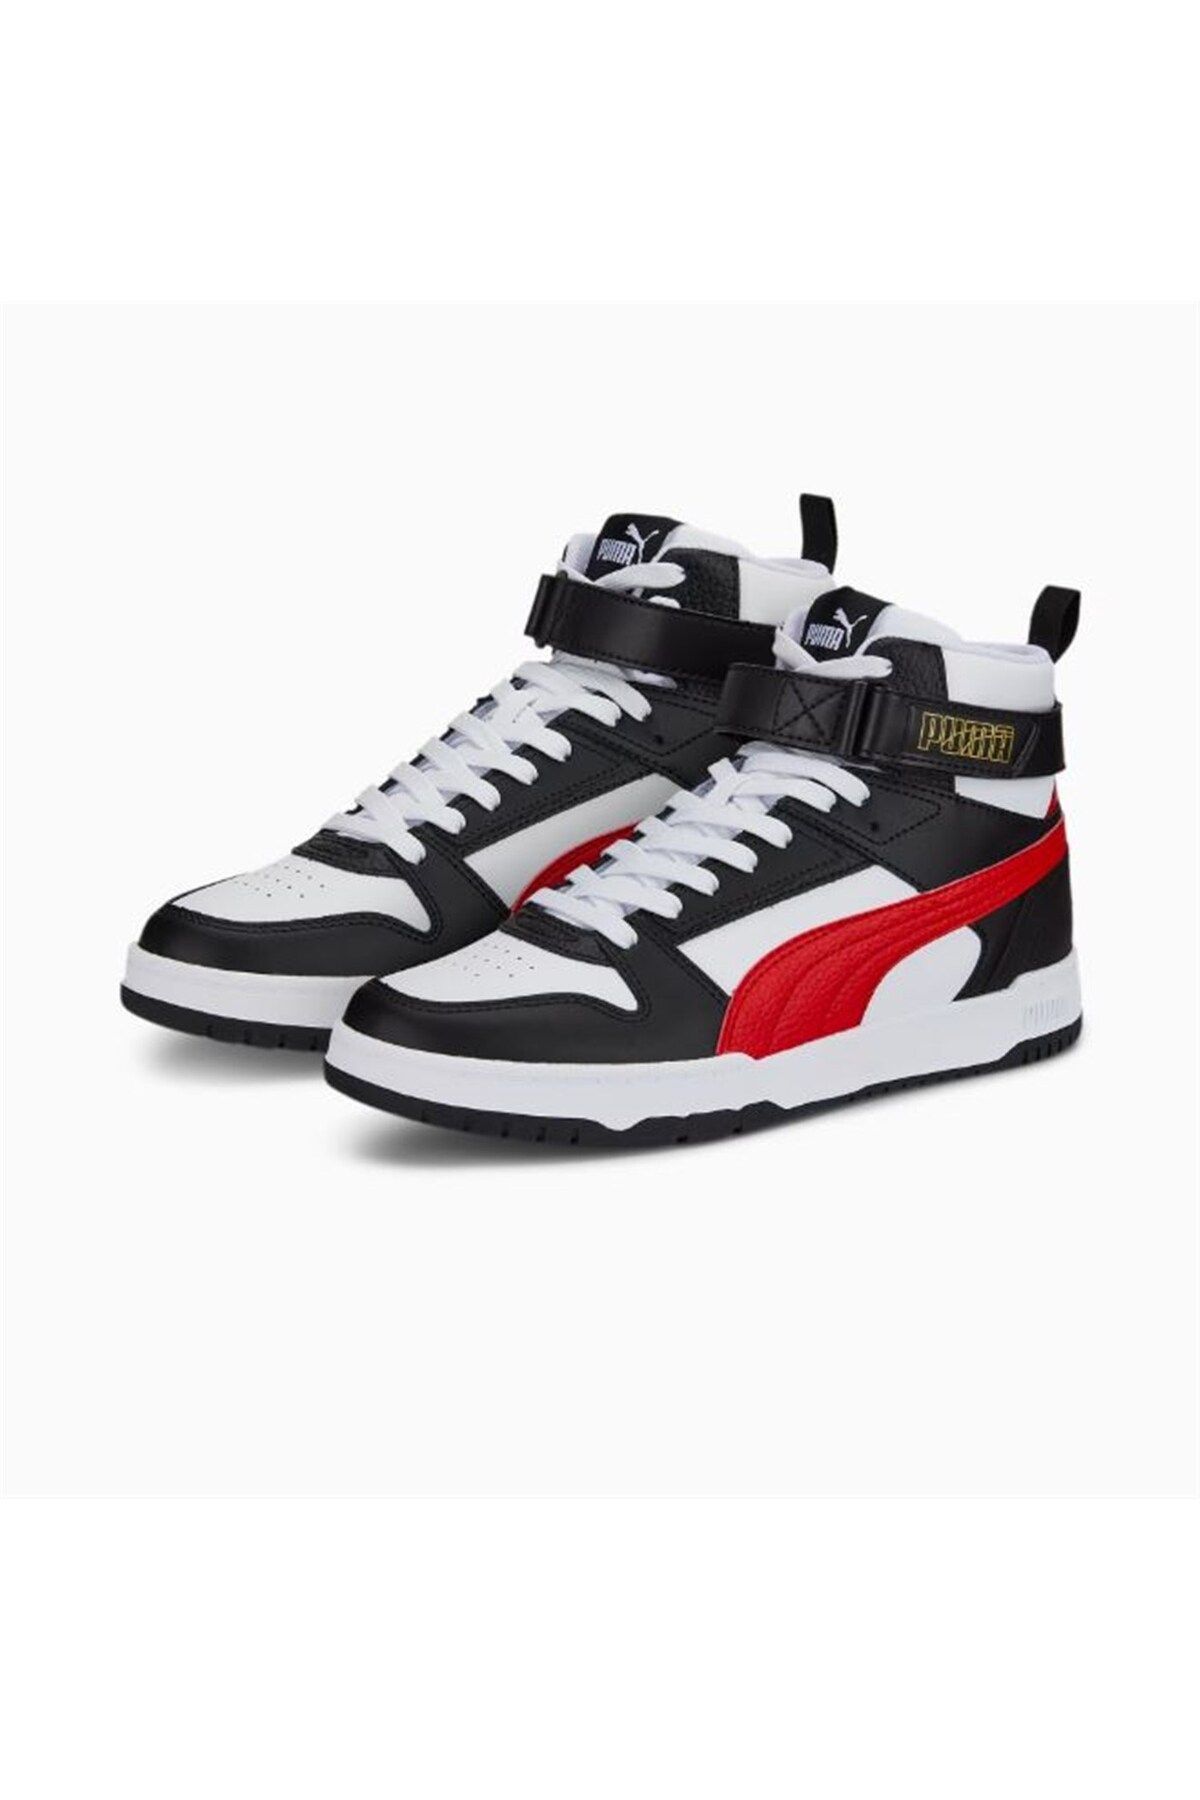 PUMA Men's SOFTRIDE ENZO EVO Sneaker, High Risk Red-Puma Black, 10.5 -  Walmart.com